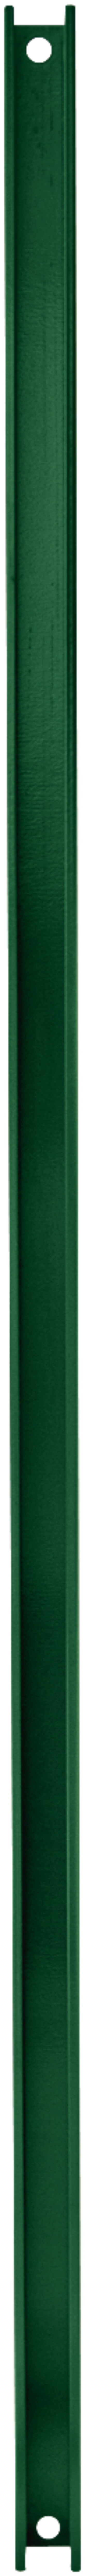 H+S Strebe für Tür-/Torpfahl grün 1,0 m